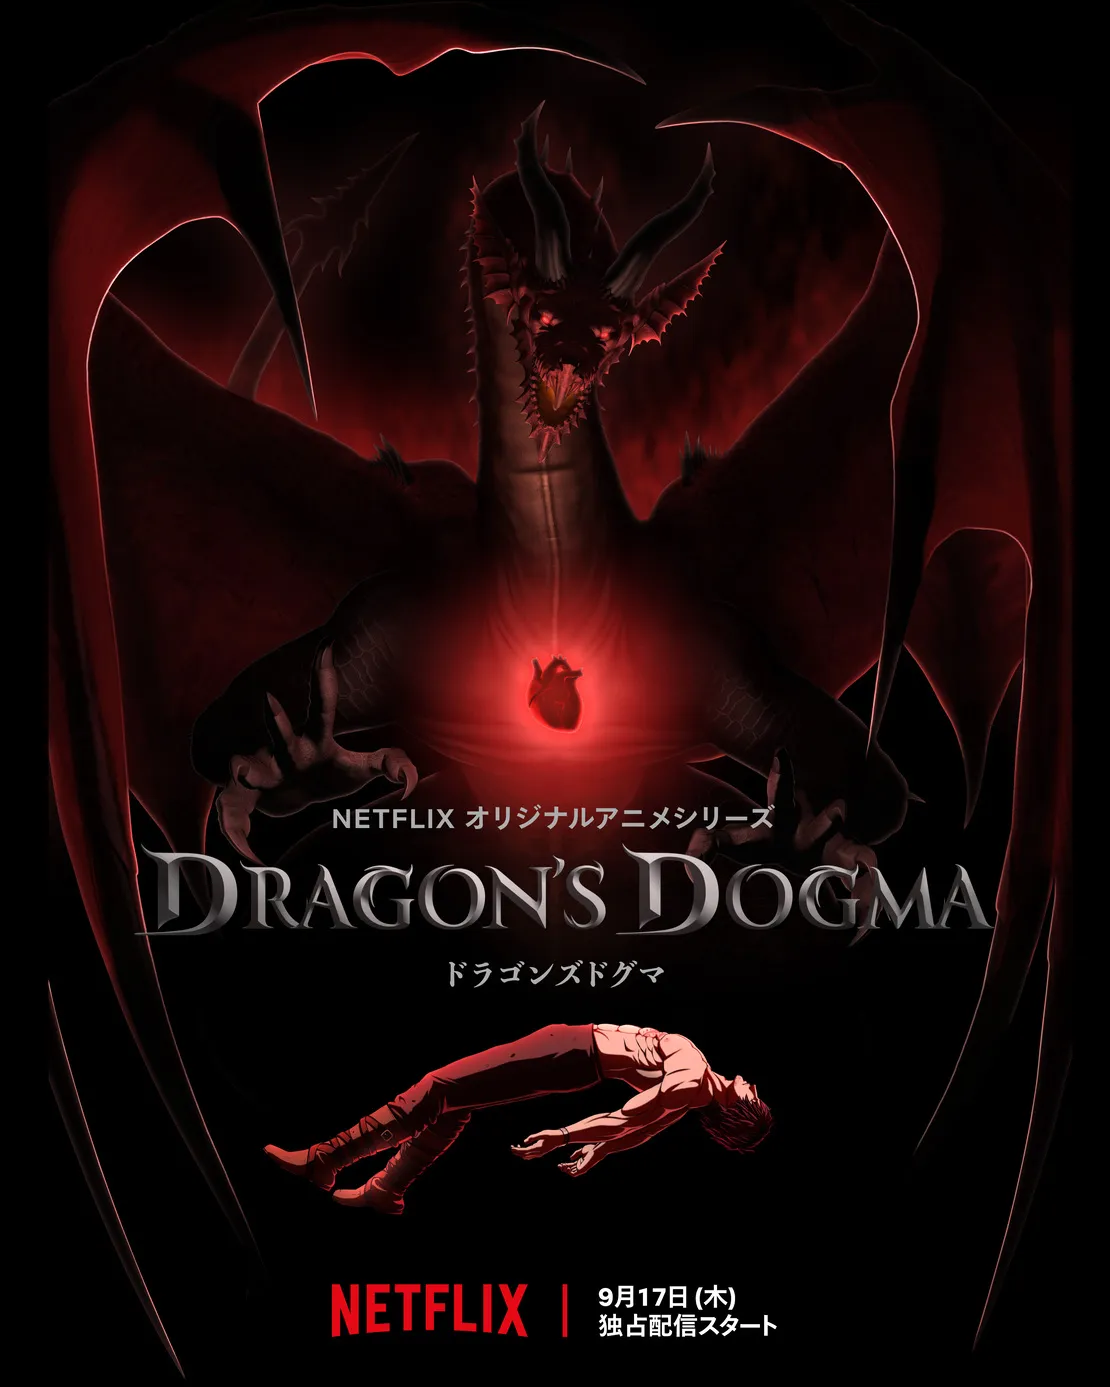 Netflixオリジナルアニメシリーズ「ドラゴンズドグマ」のティザービジュアルが到着